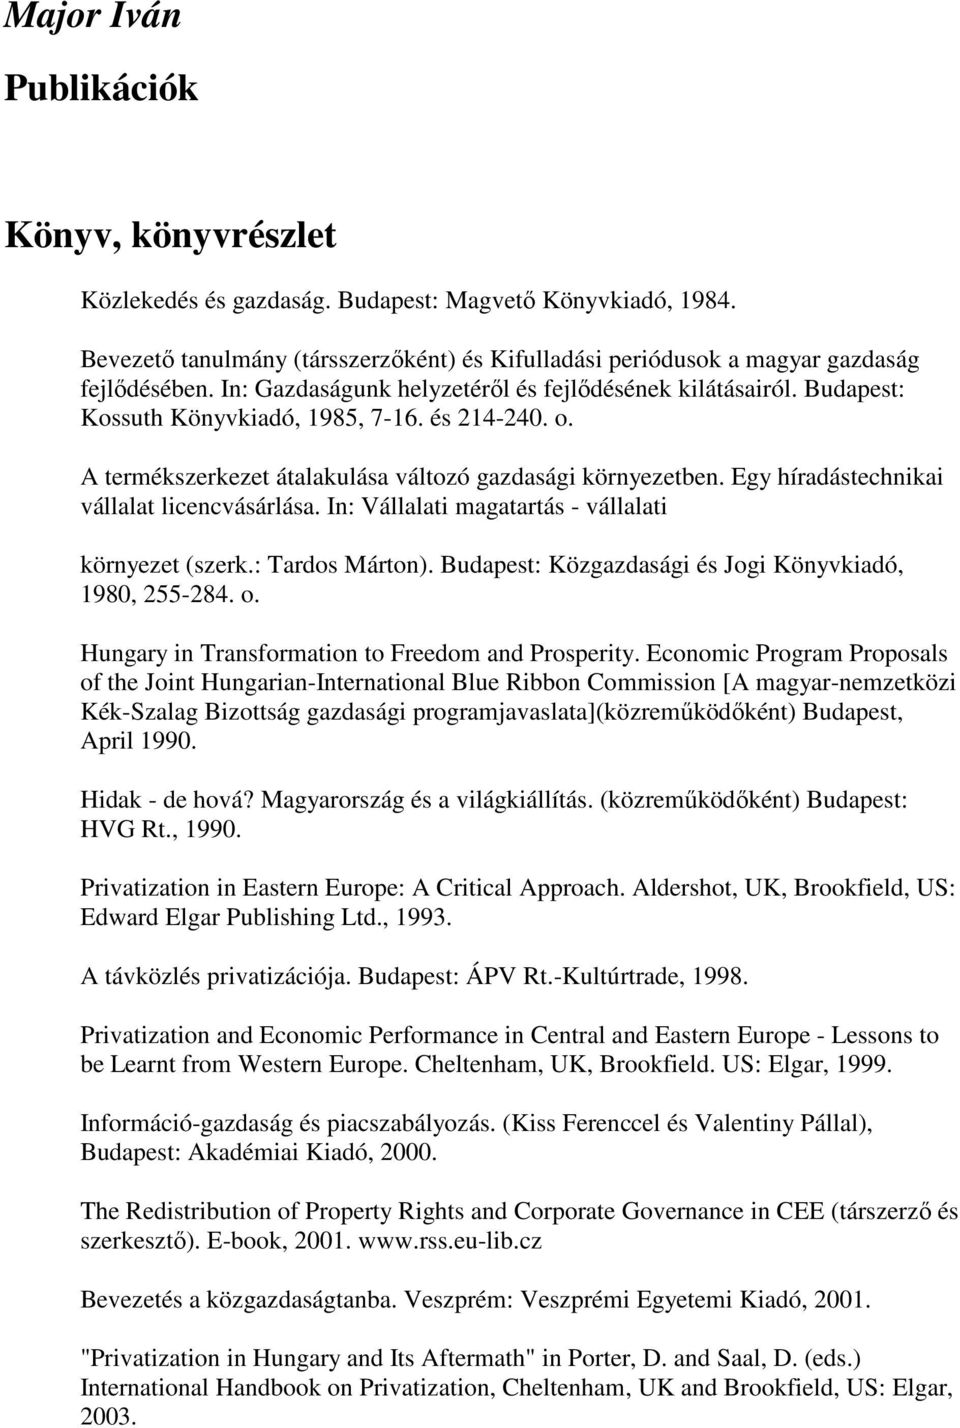 Egy híradástechnikai vállalat licencvásárlása. In: Vállalati magatartás - vállalati környezet (szerk.: Tardos Márton). Budapest: Közgazdasági és Jogi Könyvkiadó, 1980, 255-284. o.